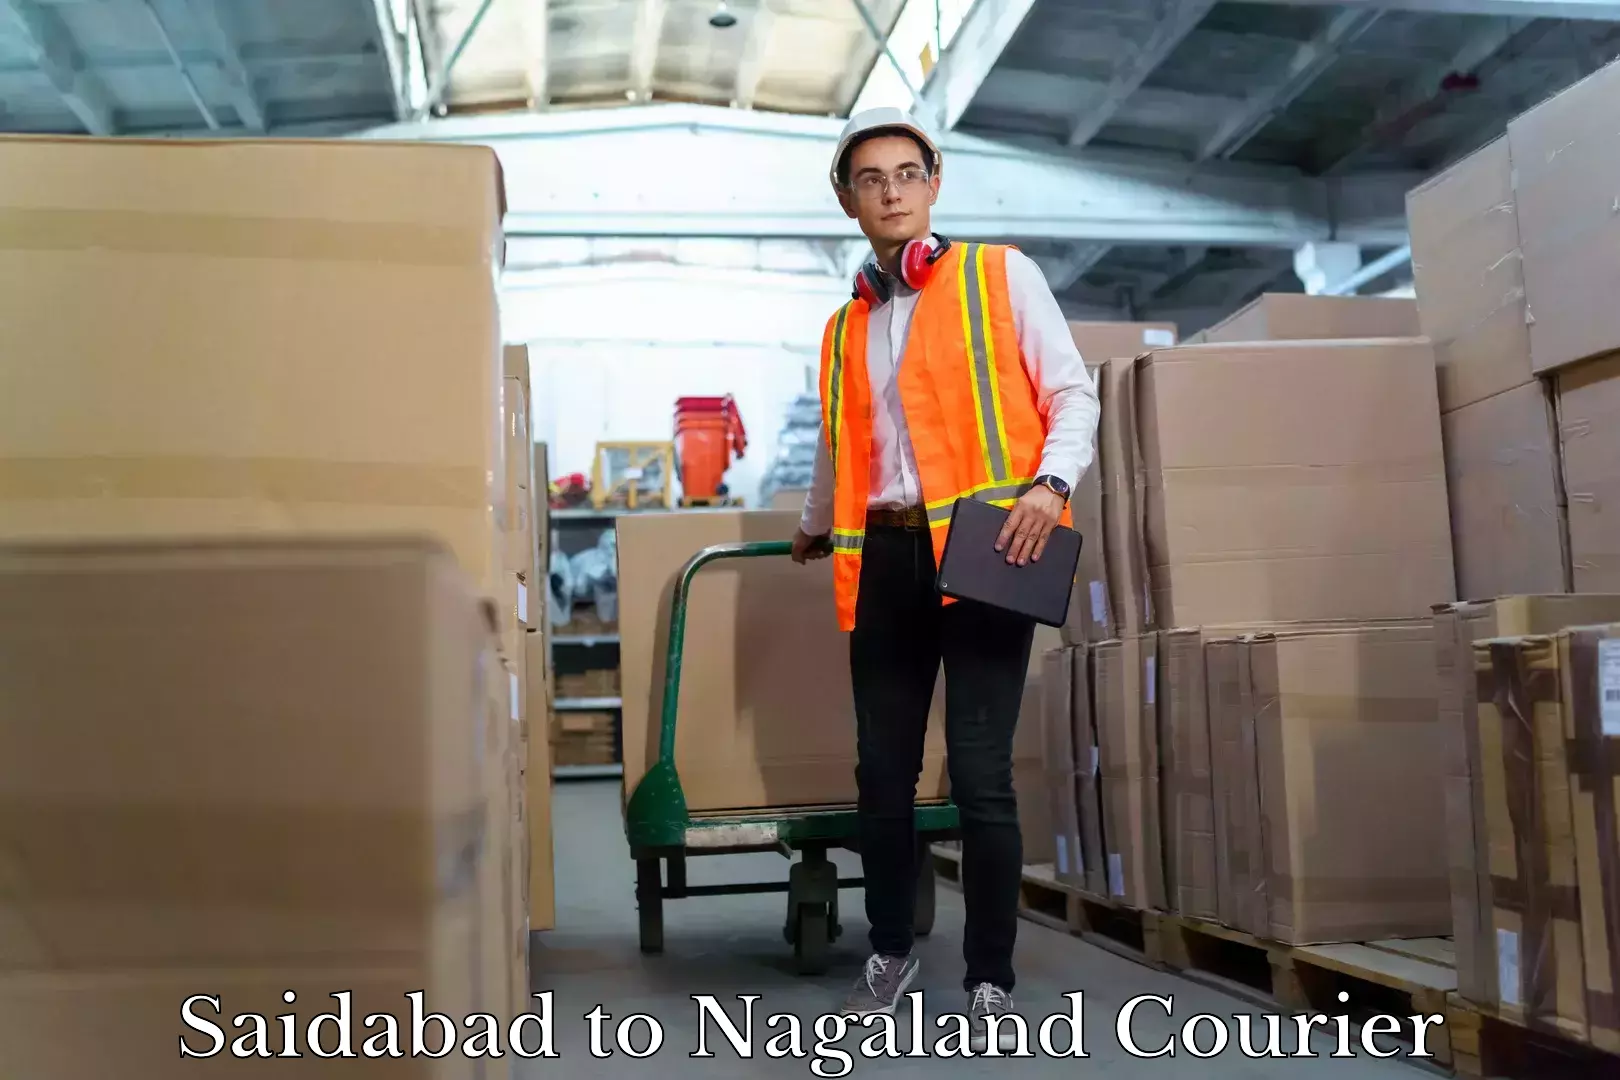 Professional moving company Saidabad to NIT Nagaland